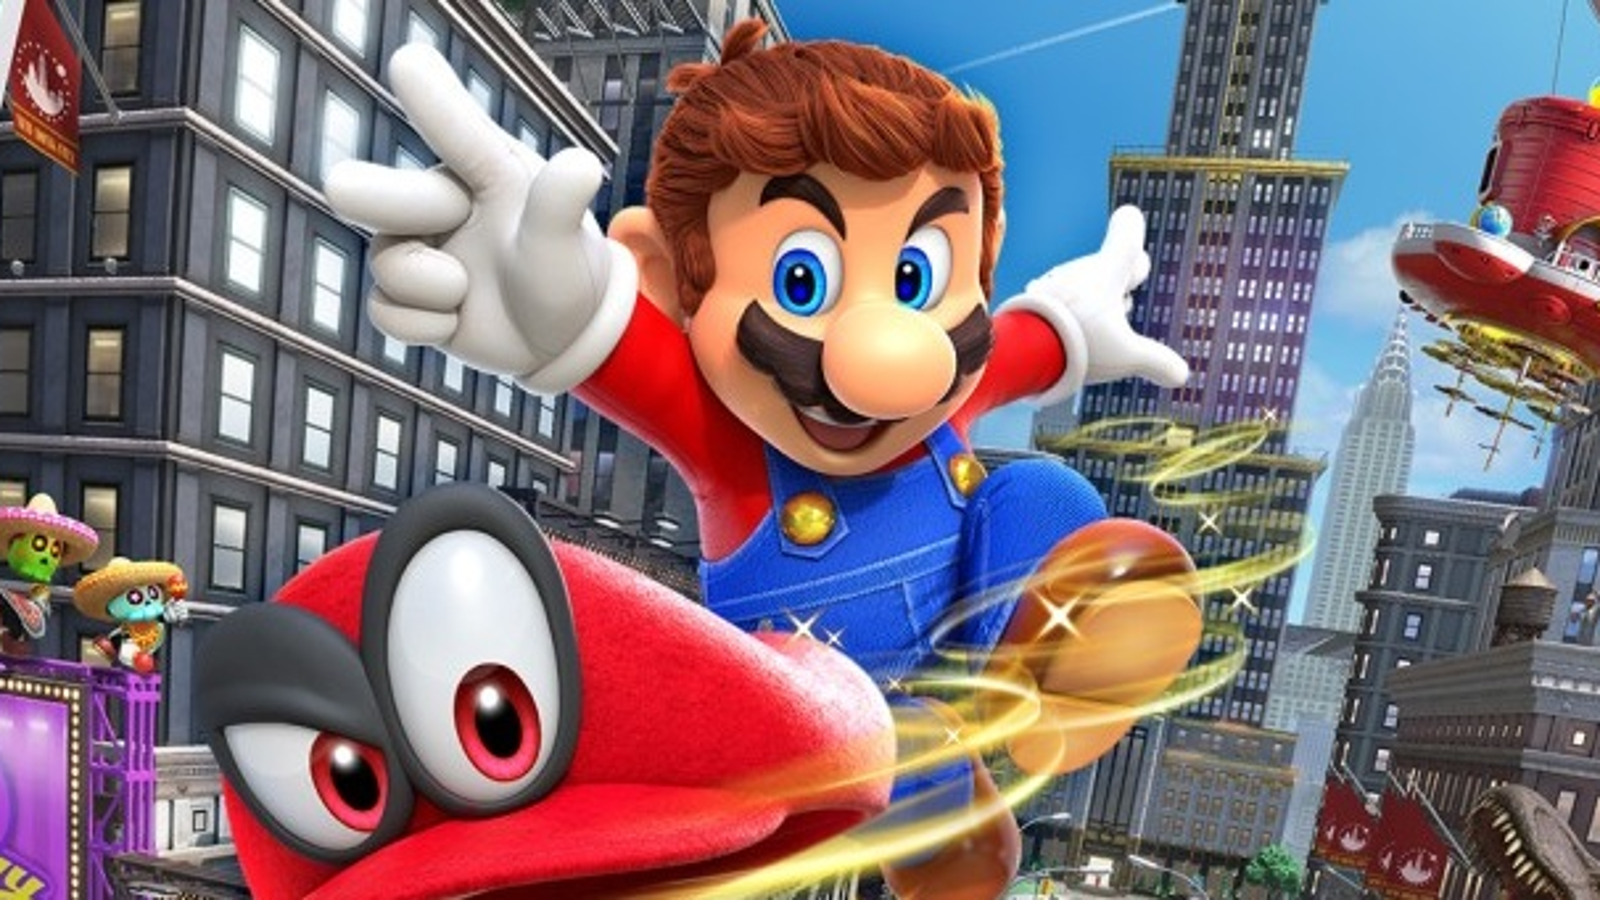 Super Mario Odyssey, Co-op Gameplay